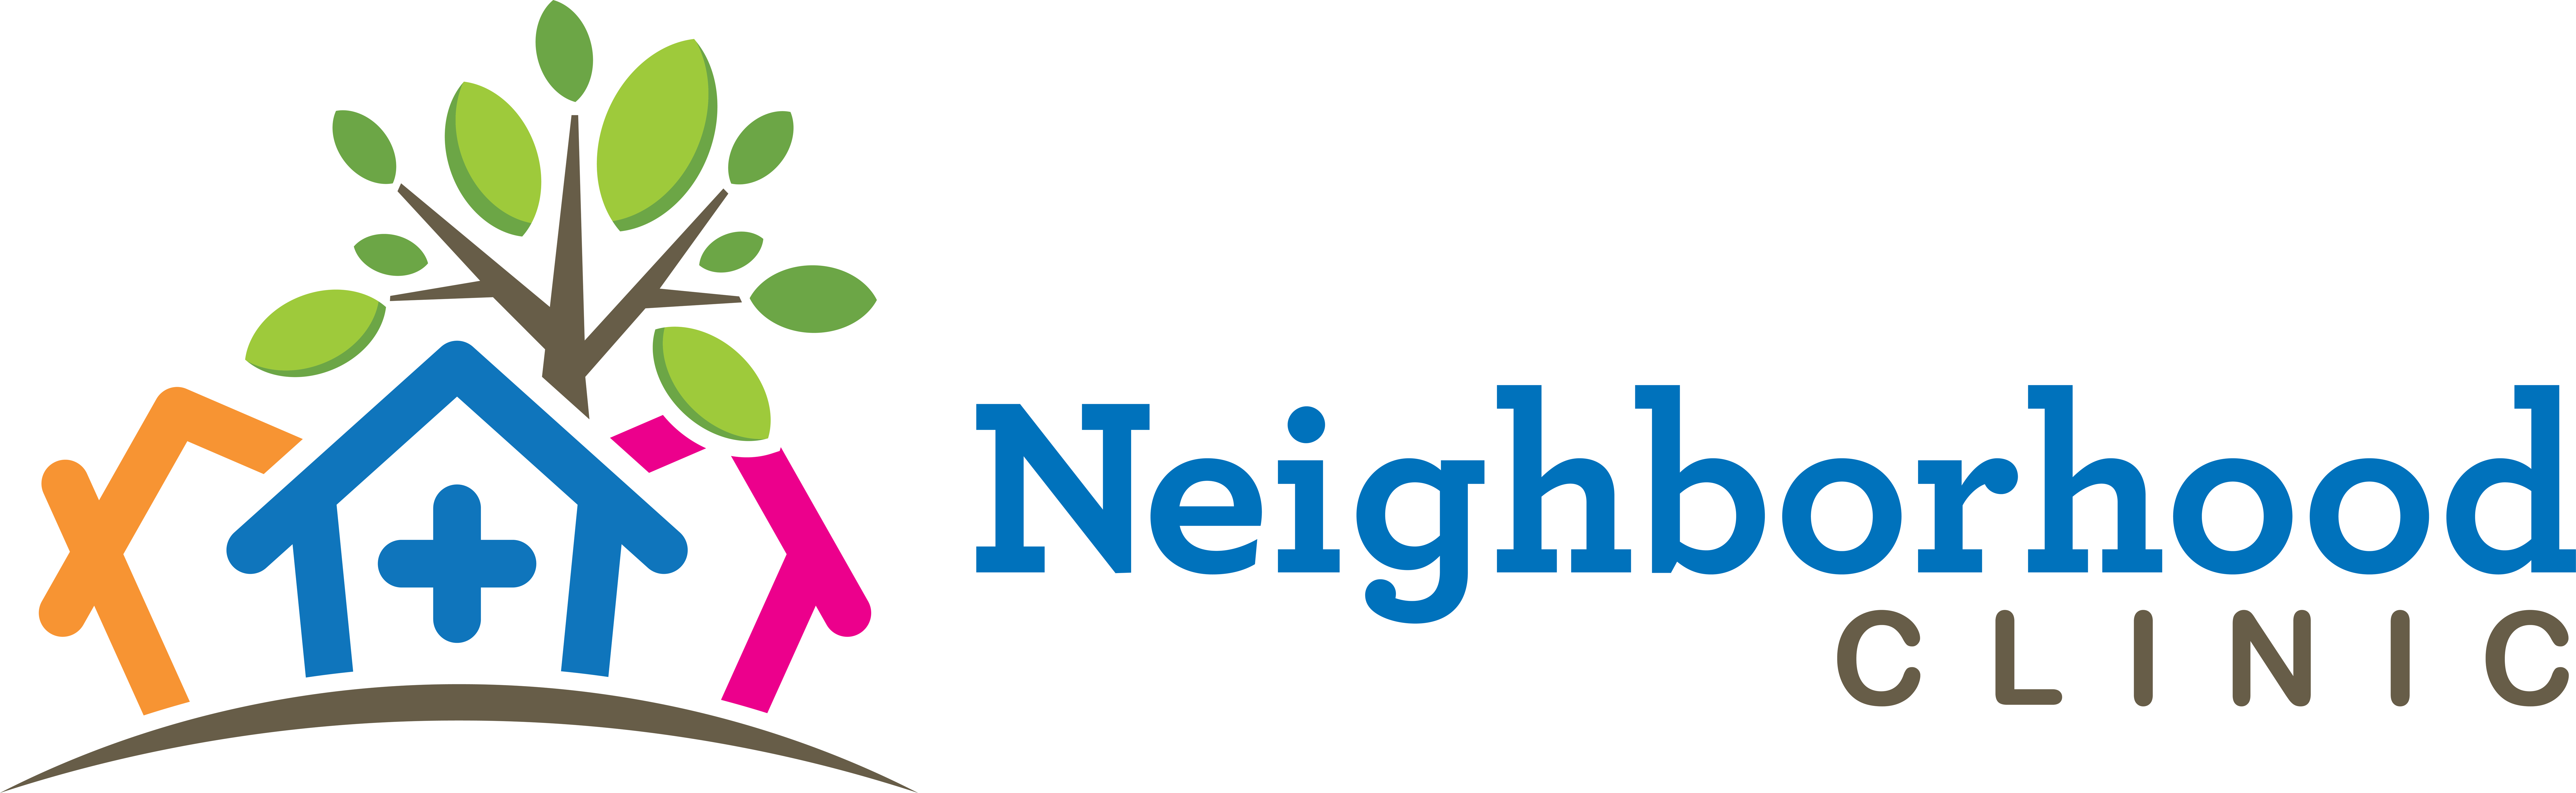 Neighborhood Clinic logo